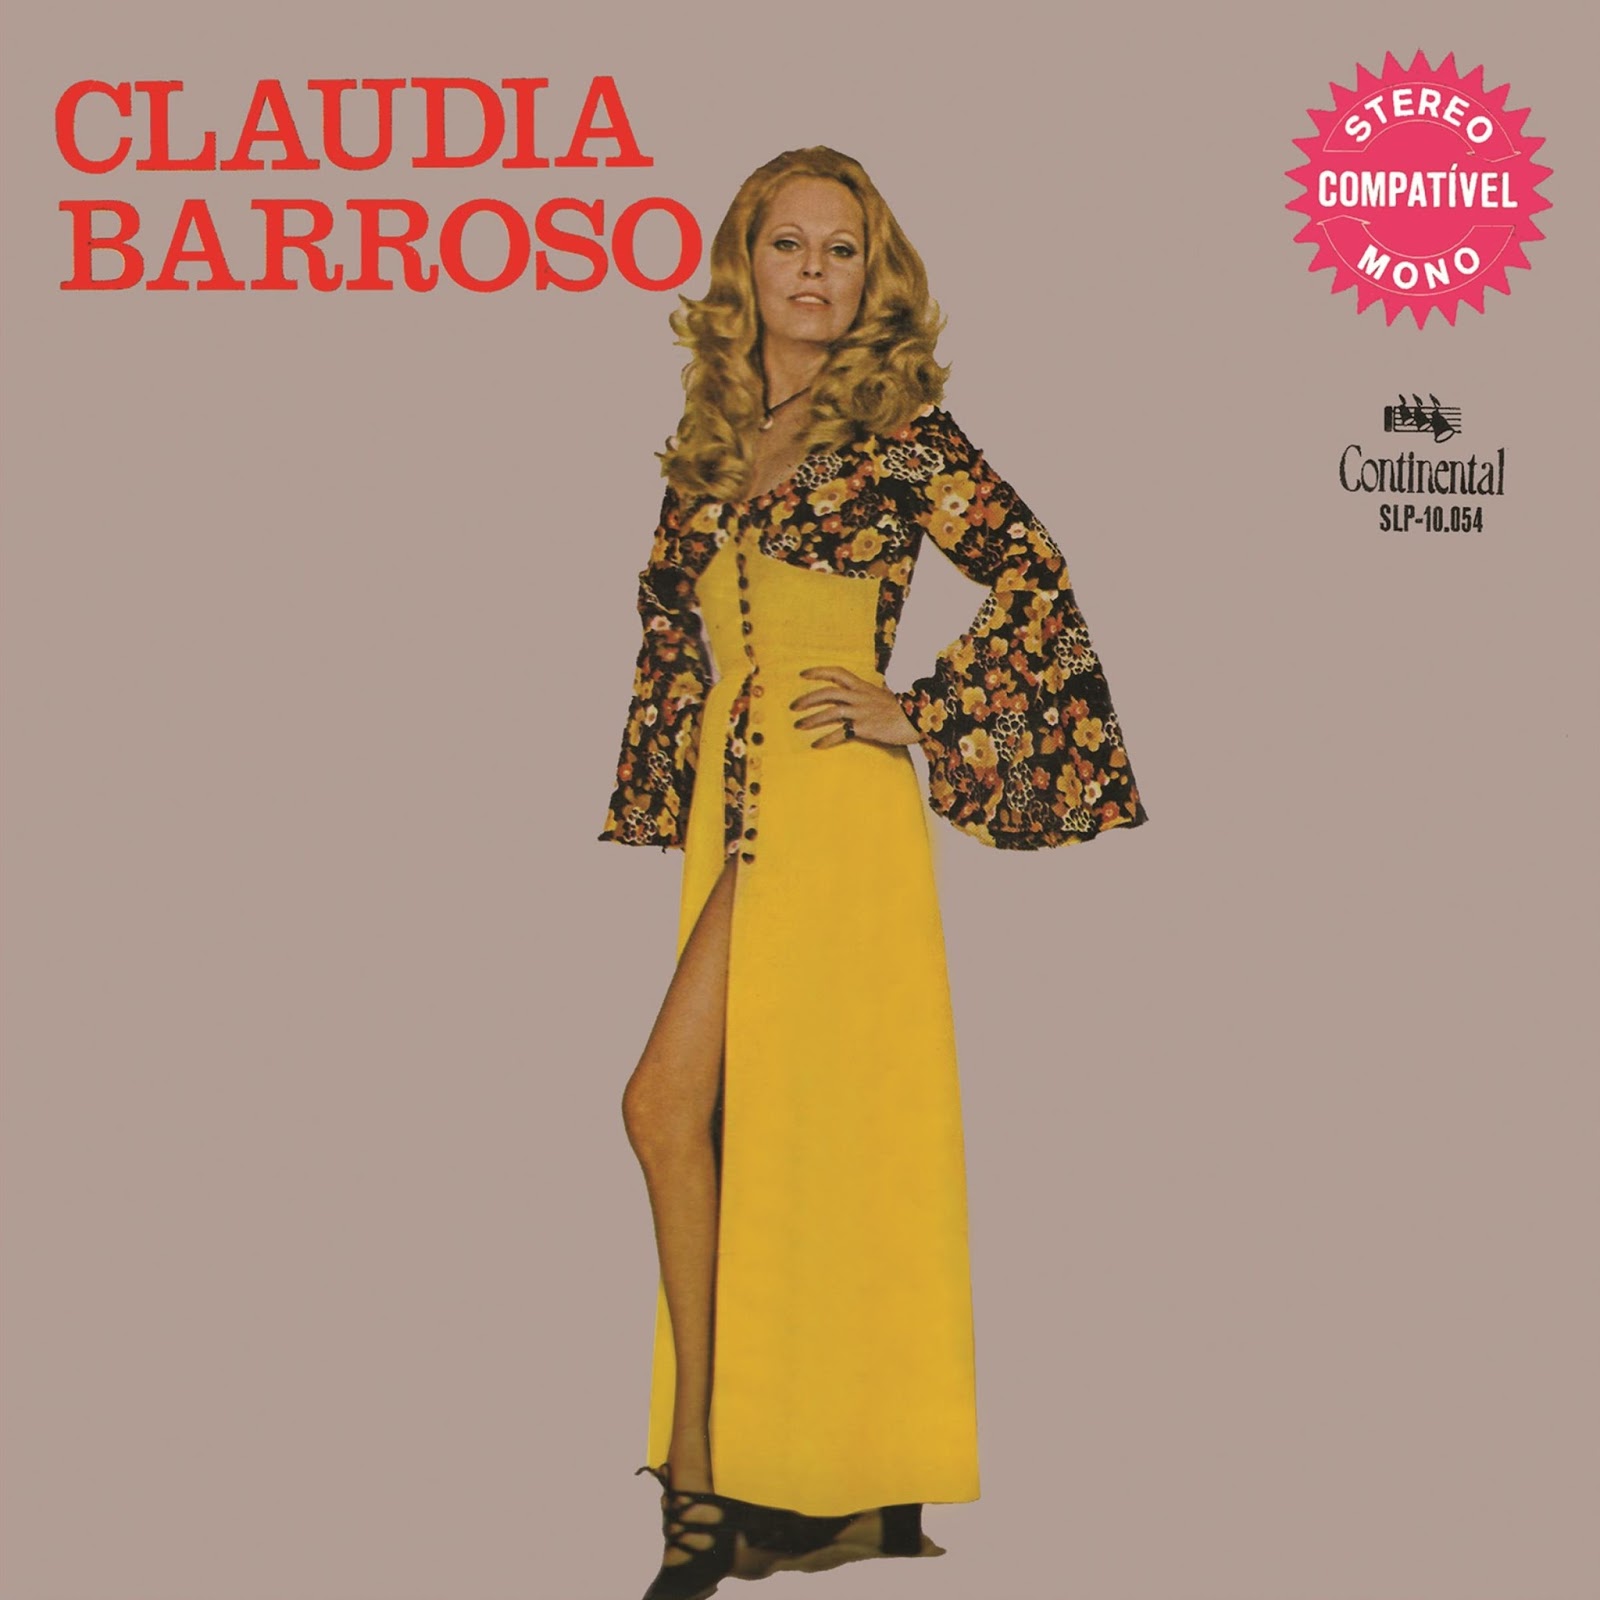 Claudia Barroso - 1971 - Brega Blog